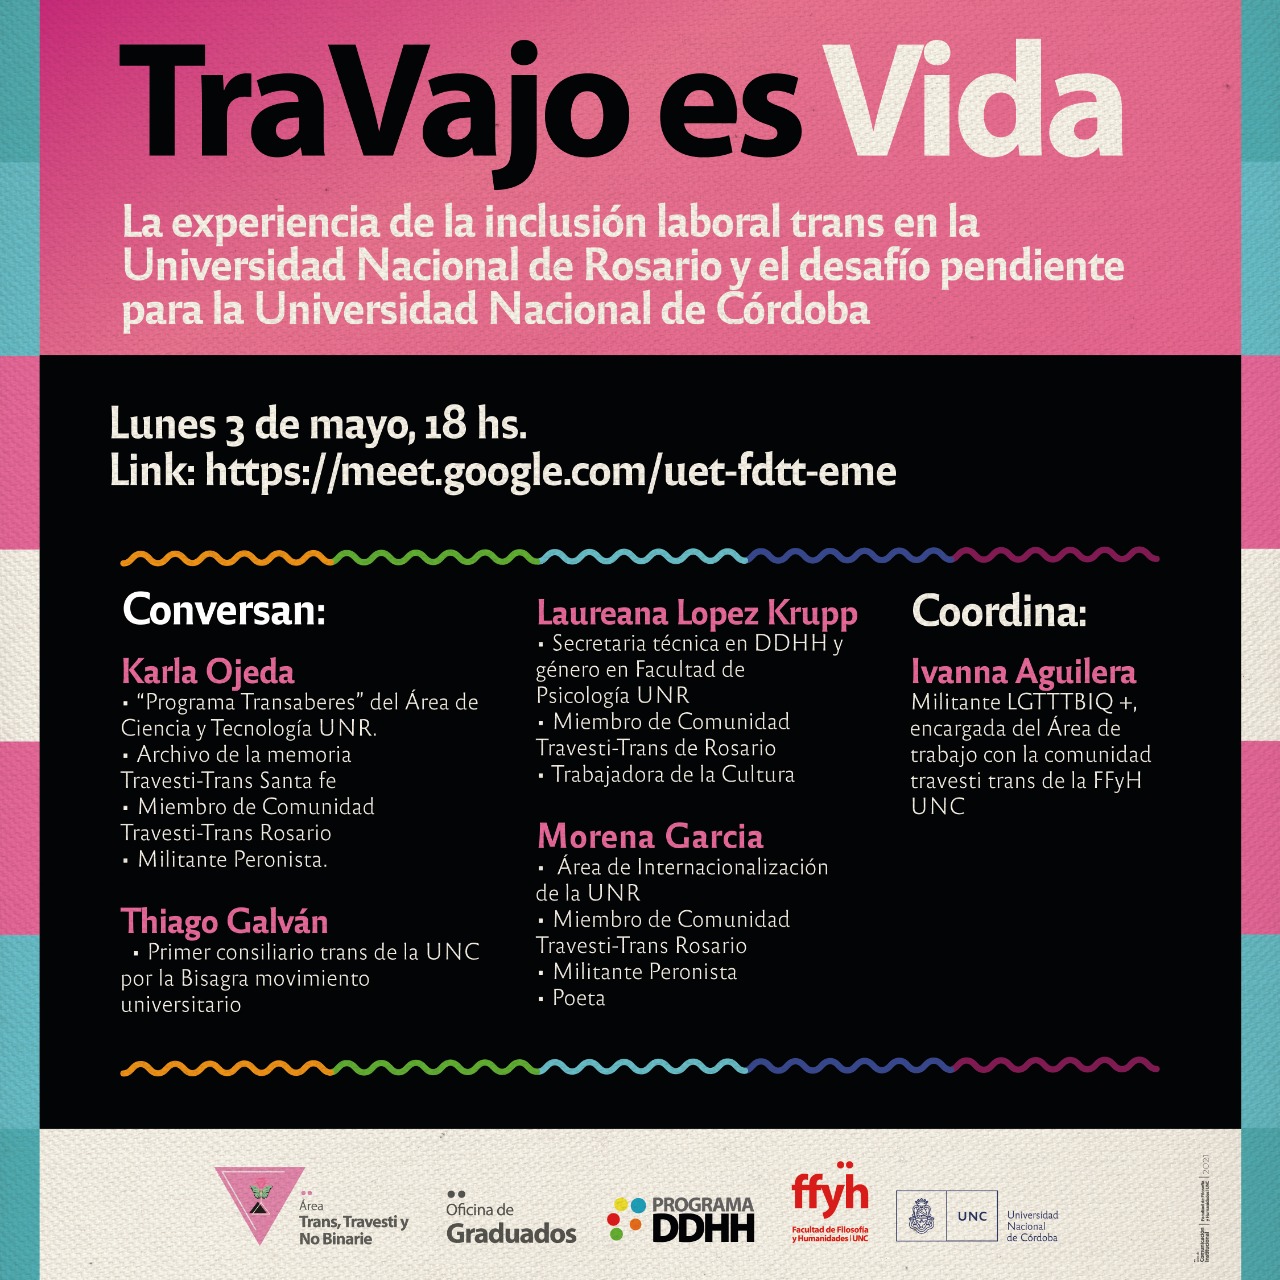 TraVajo es Vida. La experiencia de la inclusión laboral trans en la Universidad Nacional de Rosario y el desafío pendiente para la Universidad Nacional de Córdoba